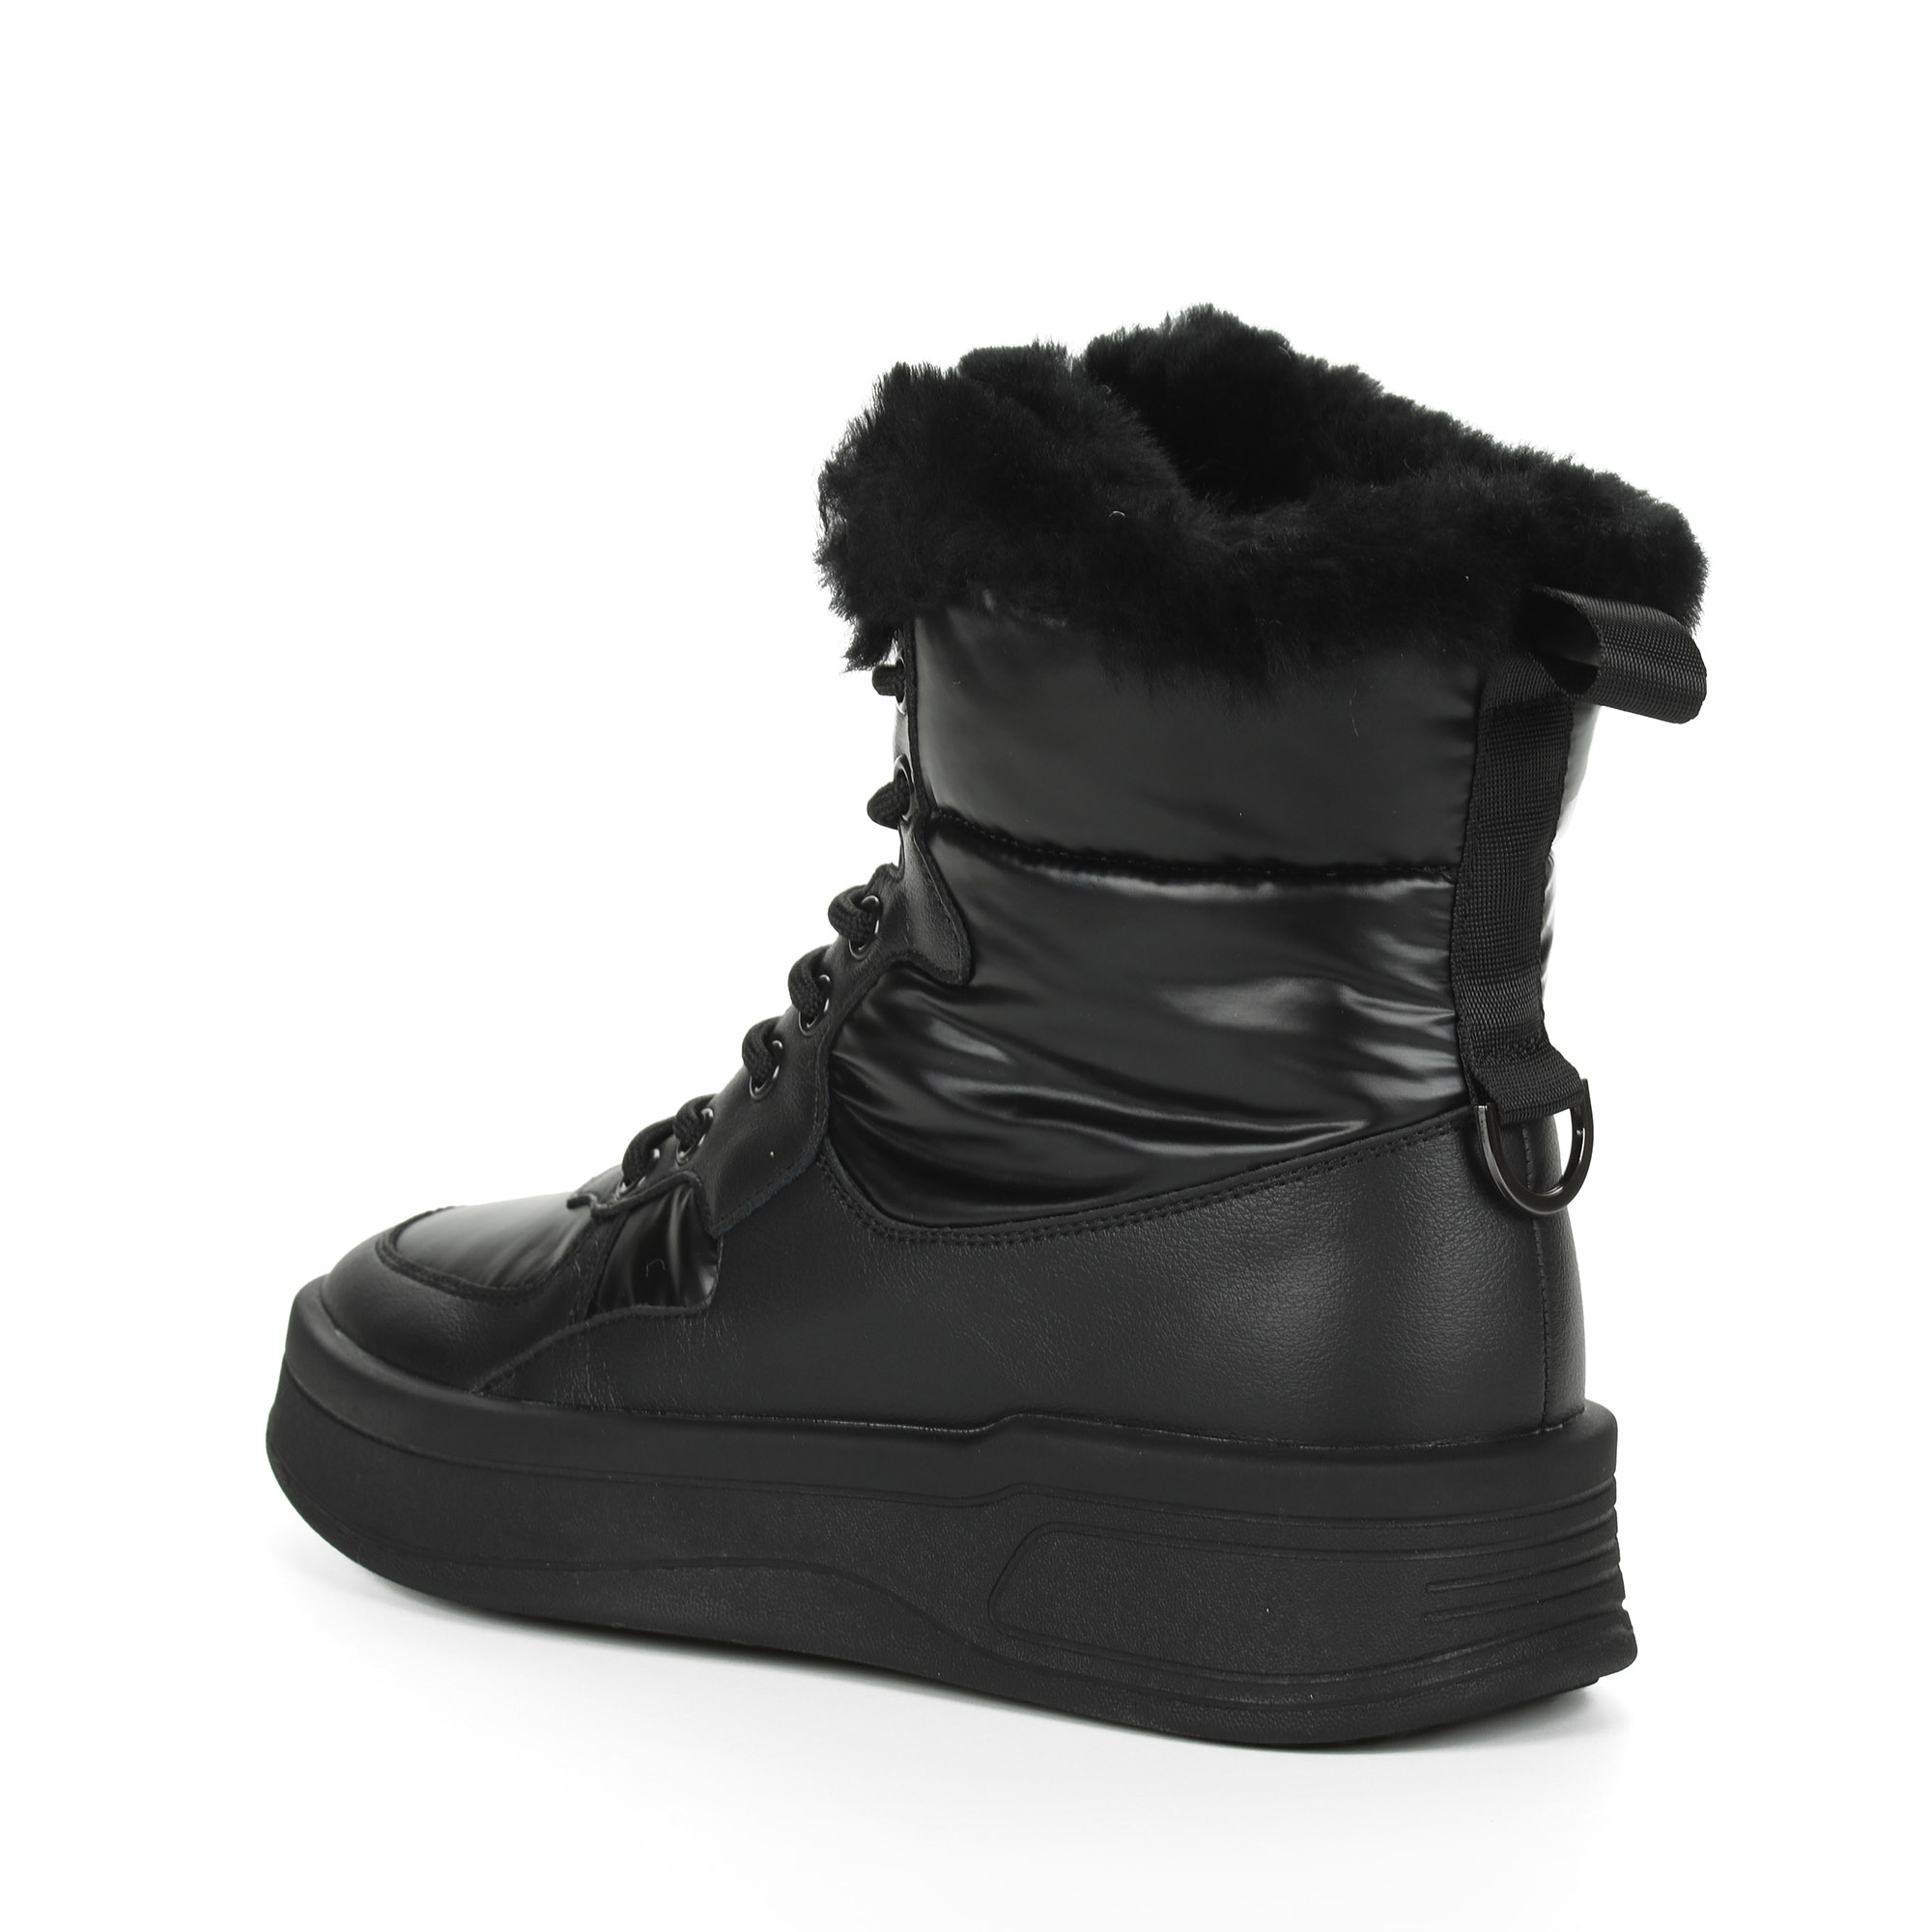 Черные высокие кроссовки из комбинированных материалов смеховой опушкой на подкладке из натуральной шерсти на утолщенной платформе Respect, размер 38, цвет черный - фото 5